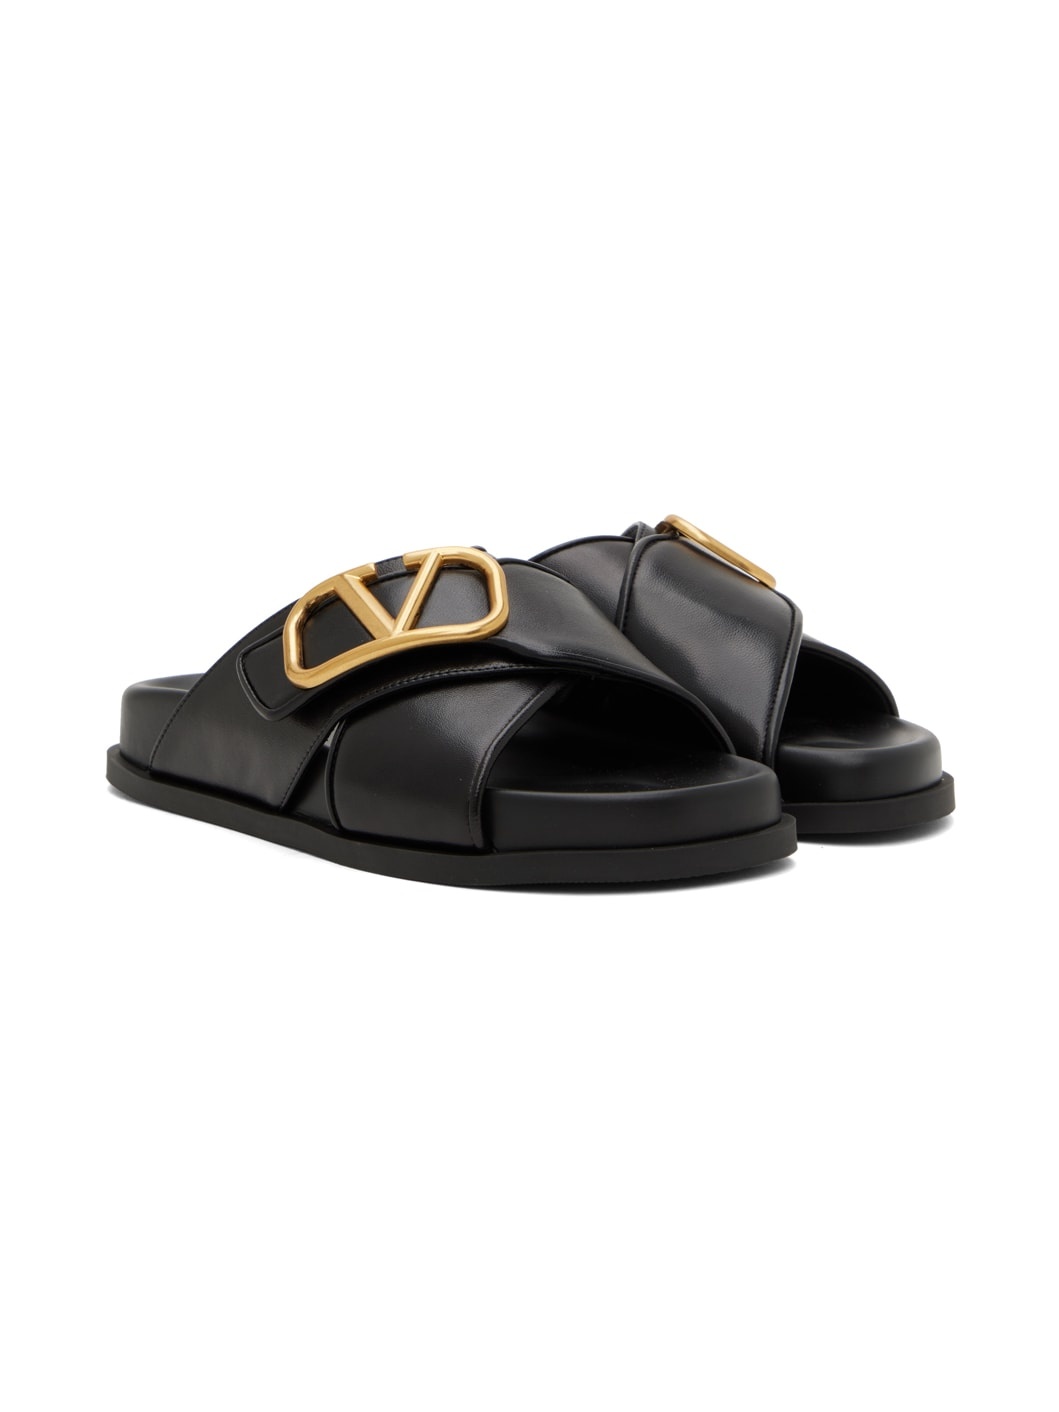 Black VLogo Sandals - 4